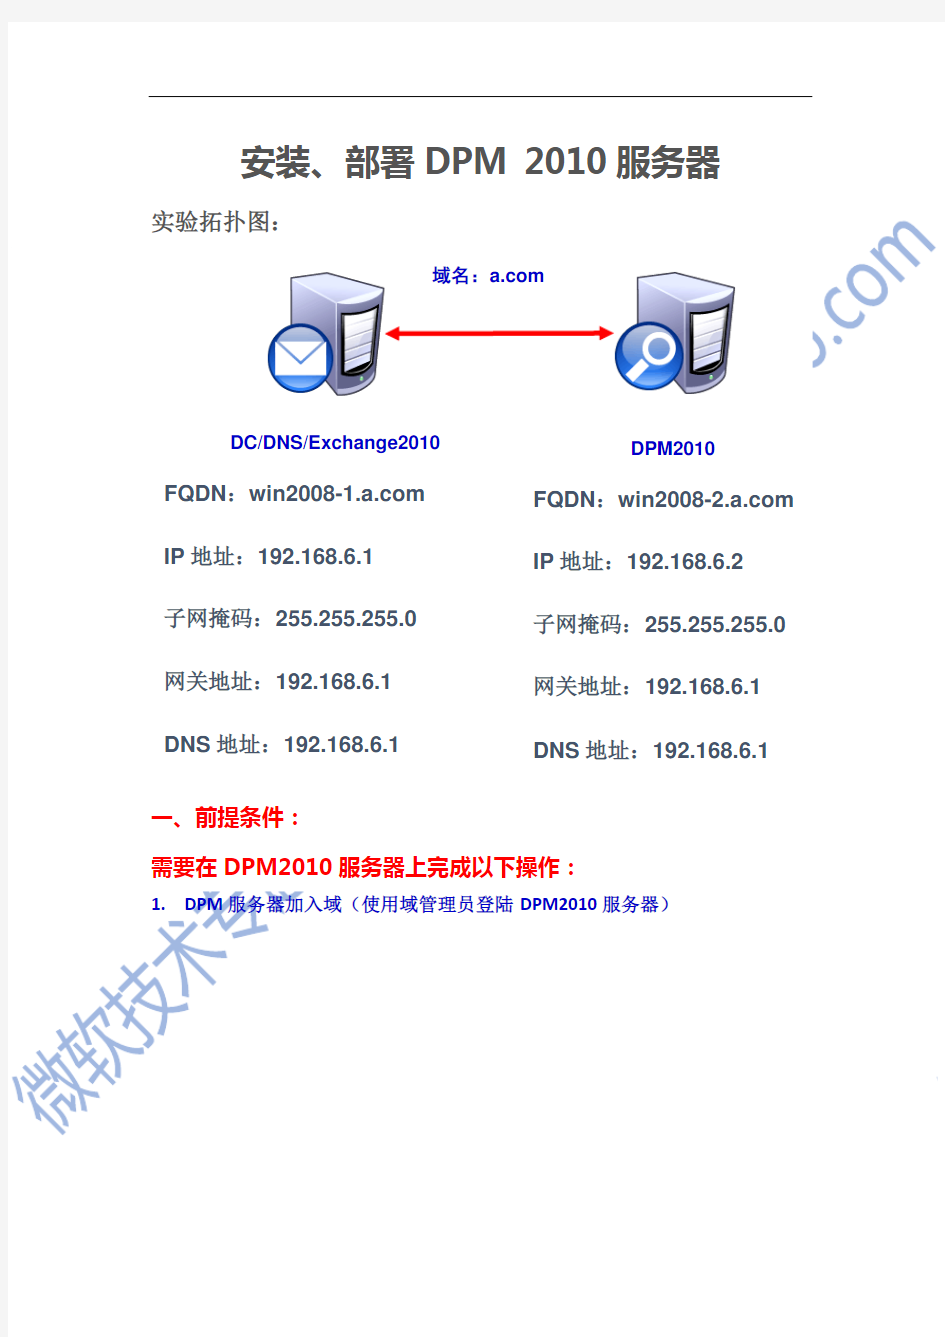 1.安装、部署DPM 2010服务器